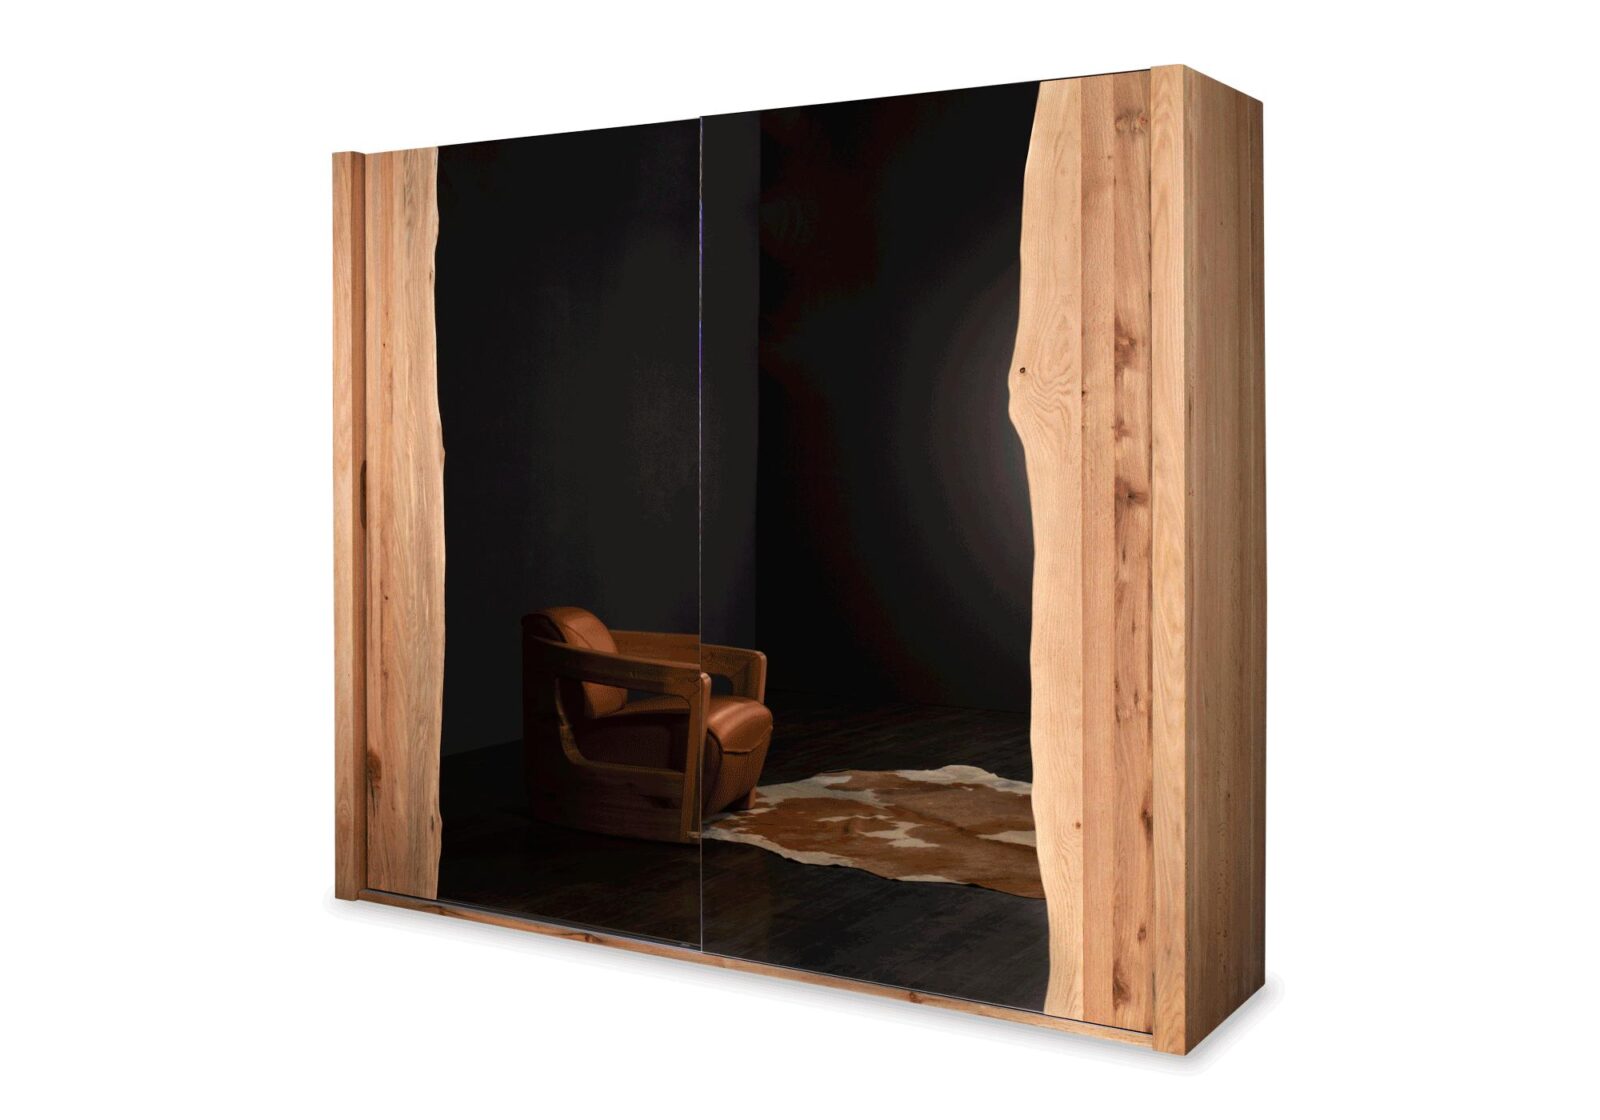 Kleiderschrank Waldkante mit Spiegel. Sumpfeiche massiv. B 242 T 68 H 218 cm. Erhältlich bei Möbel Gallati.